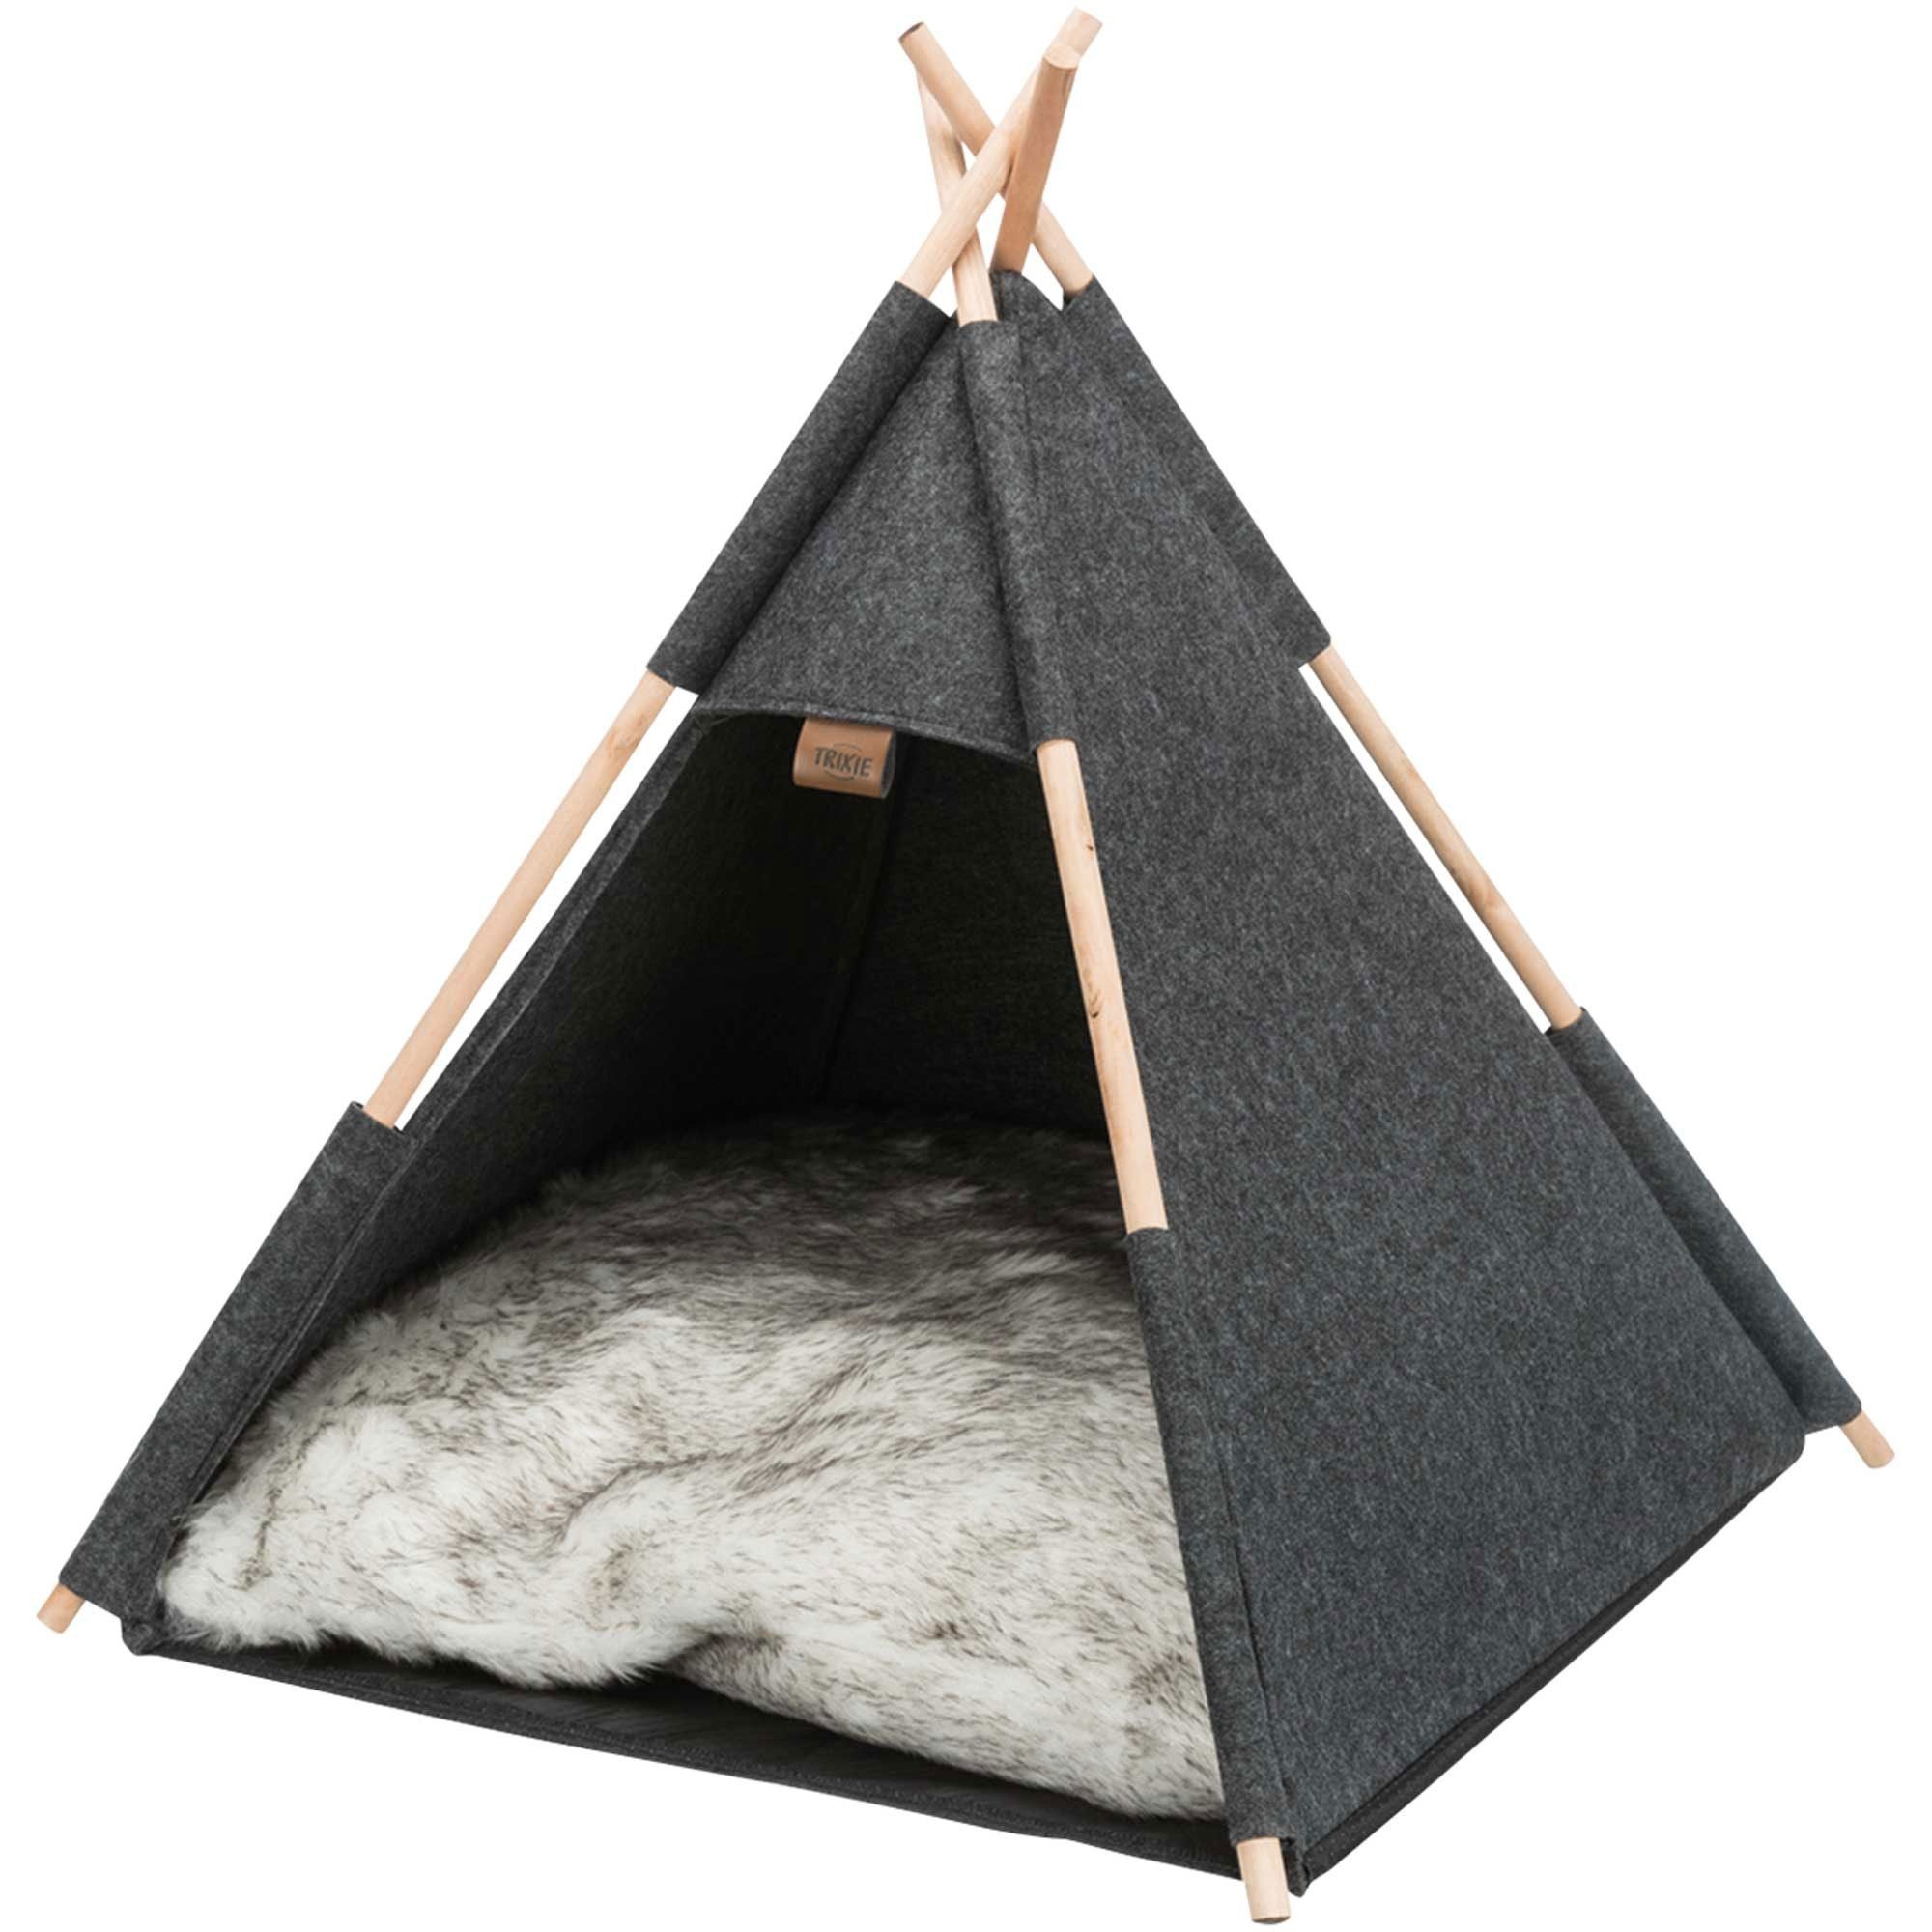 Hunde Zelt Tipi - Diese geräumige Hundehöhle ist die ideale Wohnungshütte für kleine Kissen 1 St